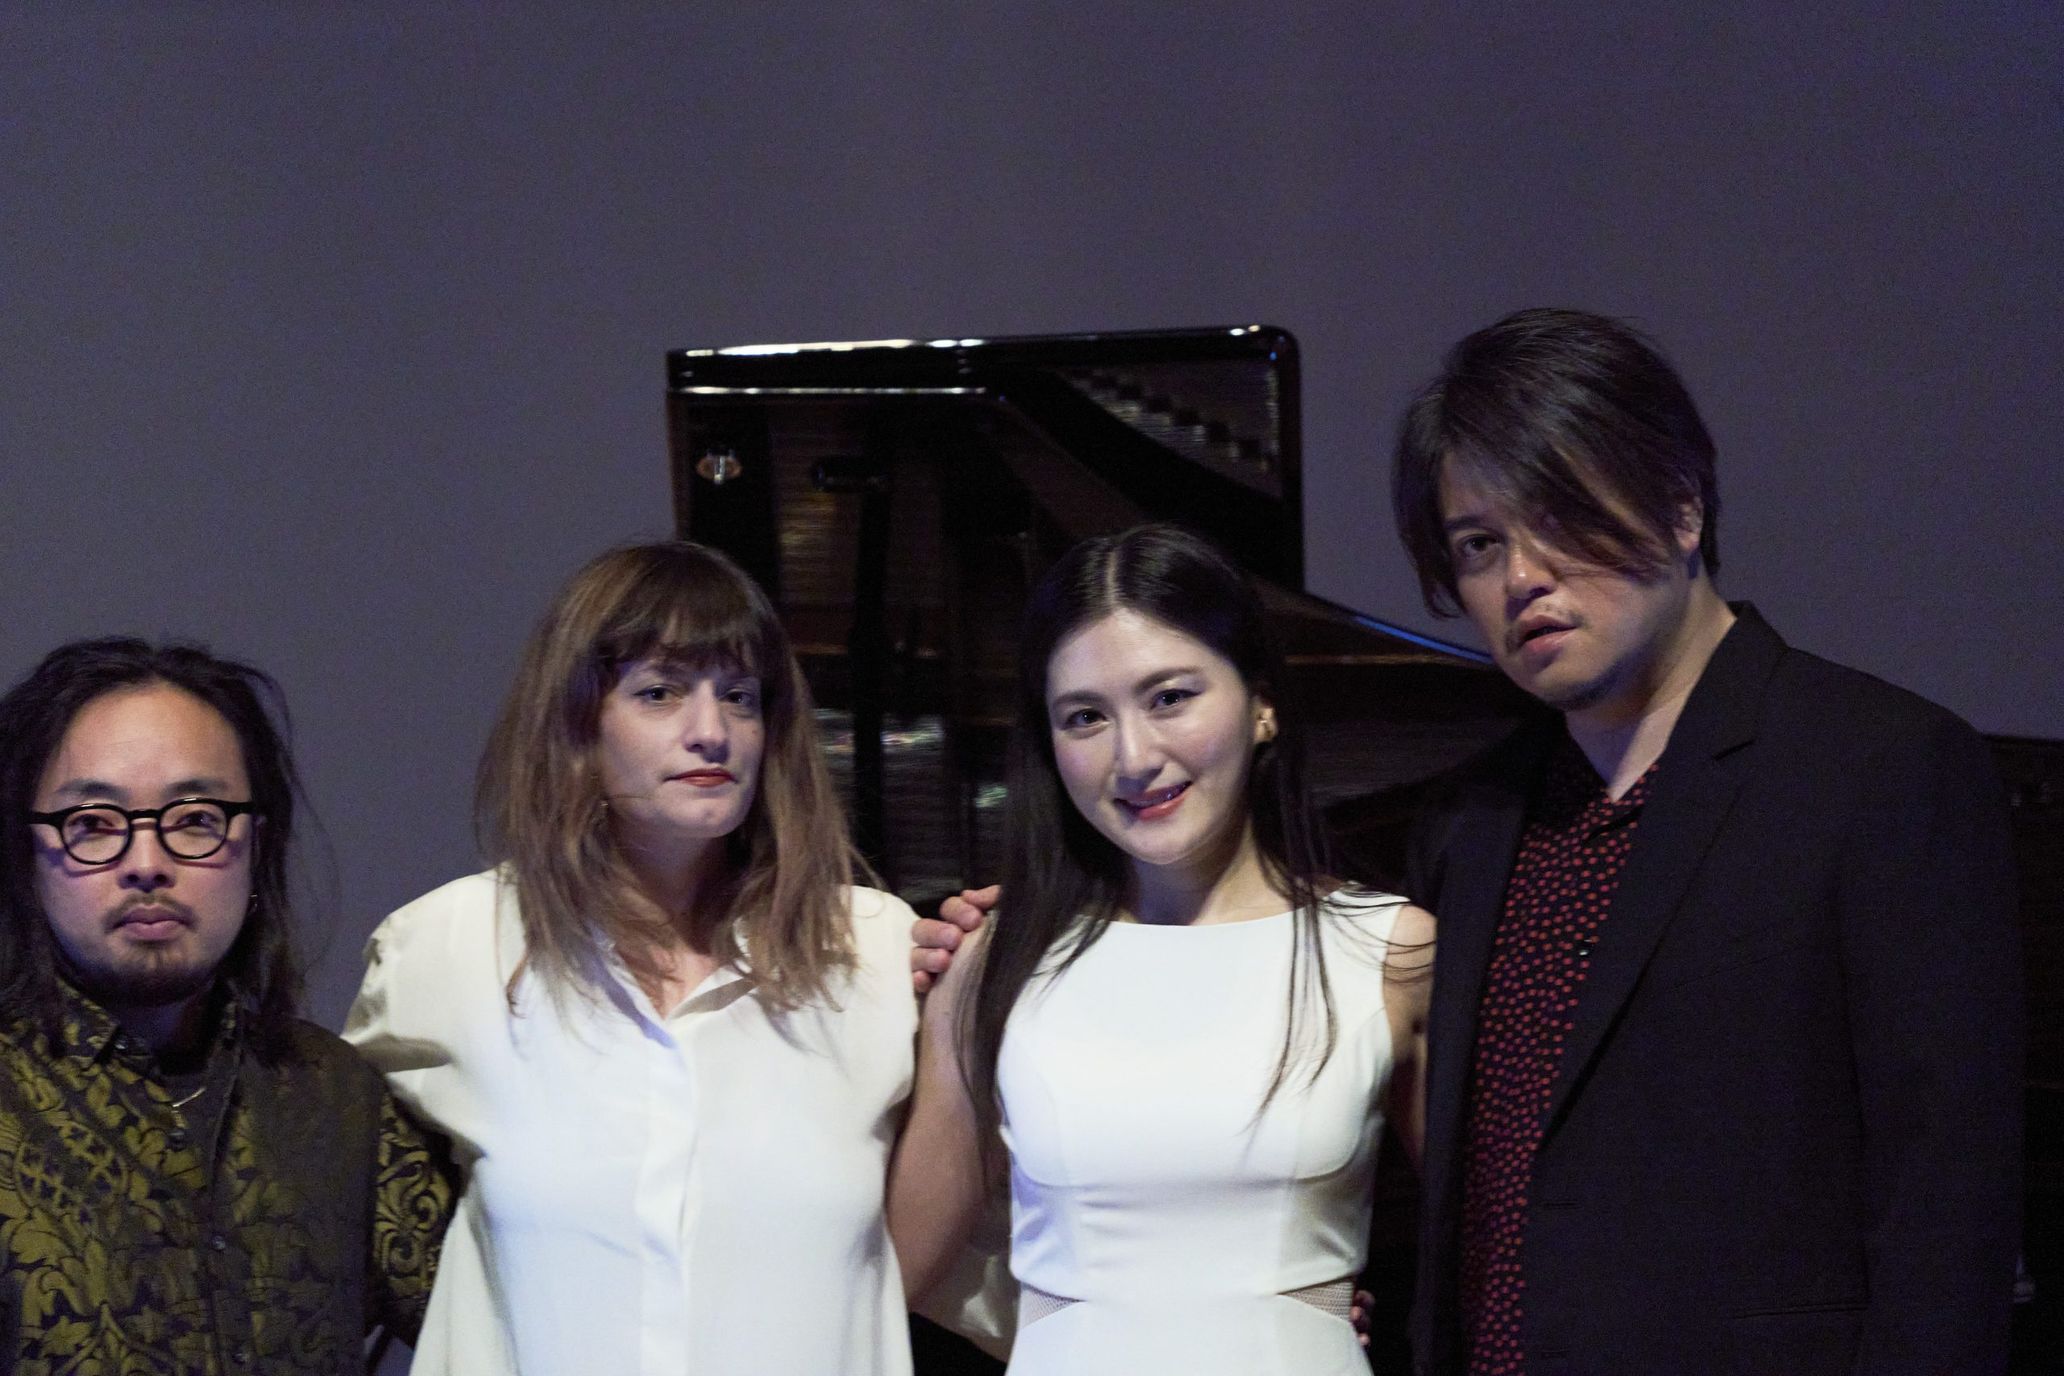 左から：笹久保伸、ジュスティーヌ・エマール、田中彩子、渋谷慶一郎
Photography Kenshu Shintsubo